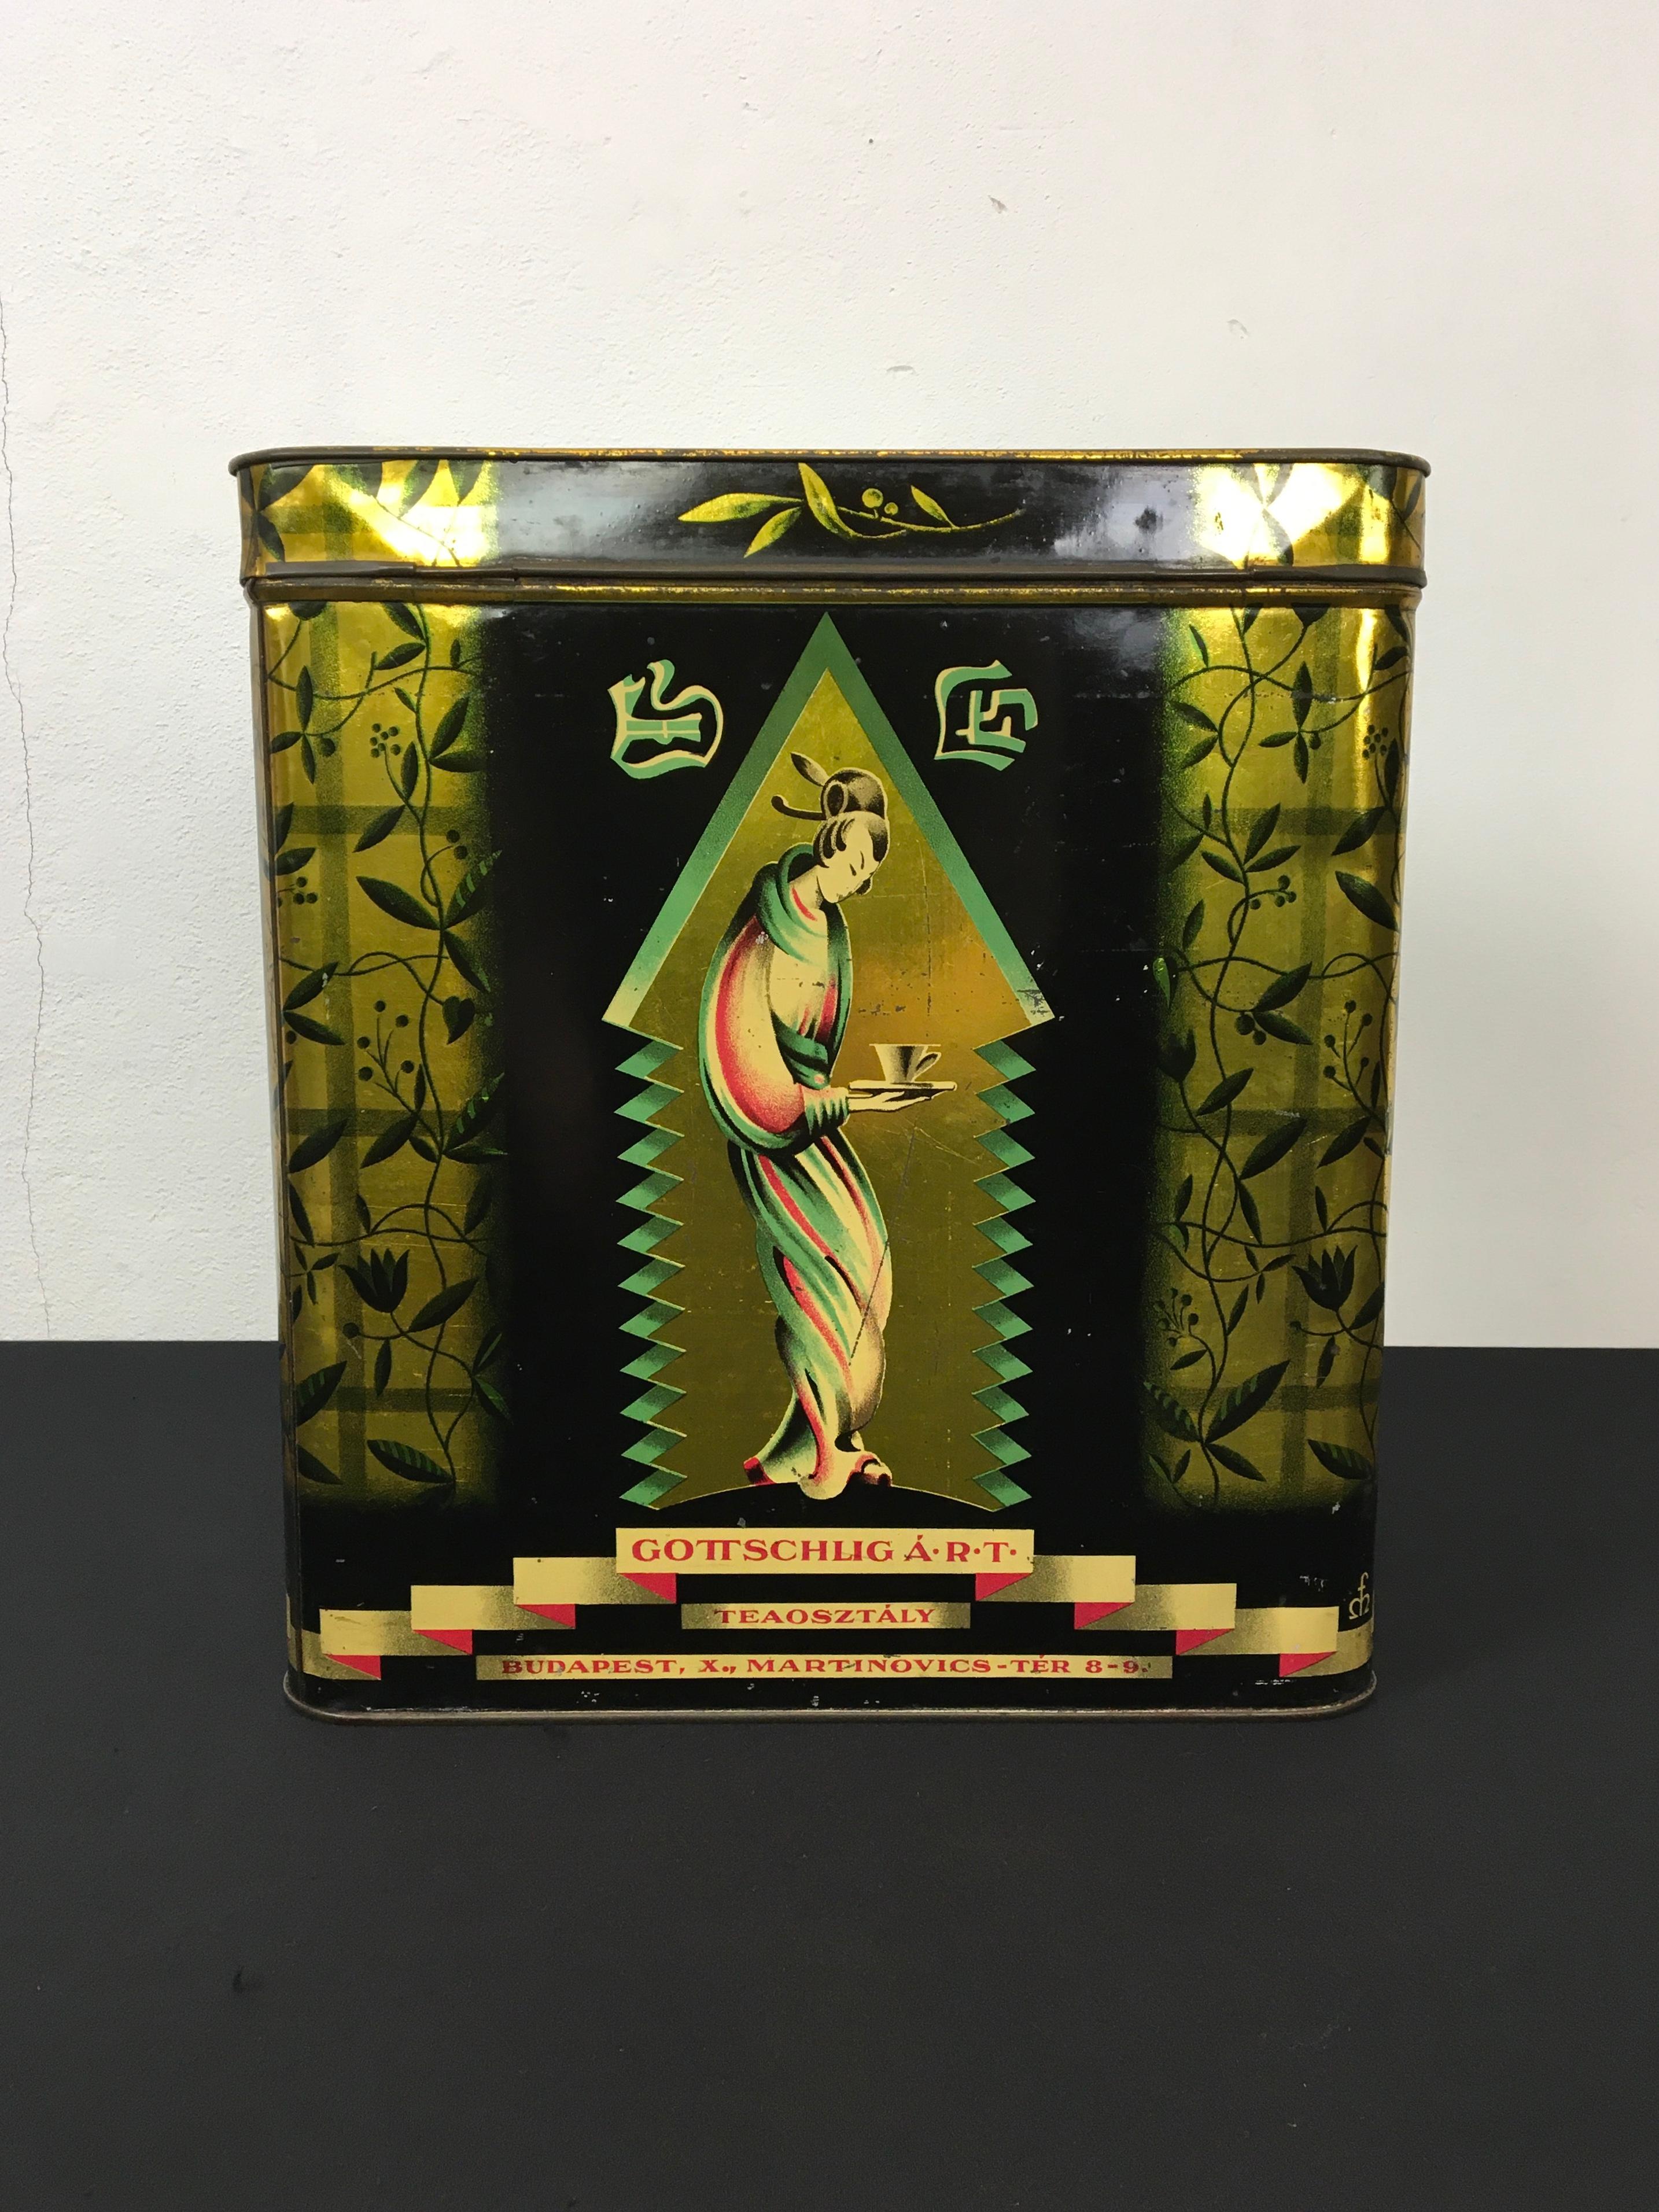 20th Century Tea Tin with Geisha, Gottschlig Agoston R.T, Budapest, Early 20th C, Asian Style For Sale